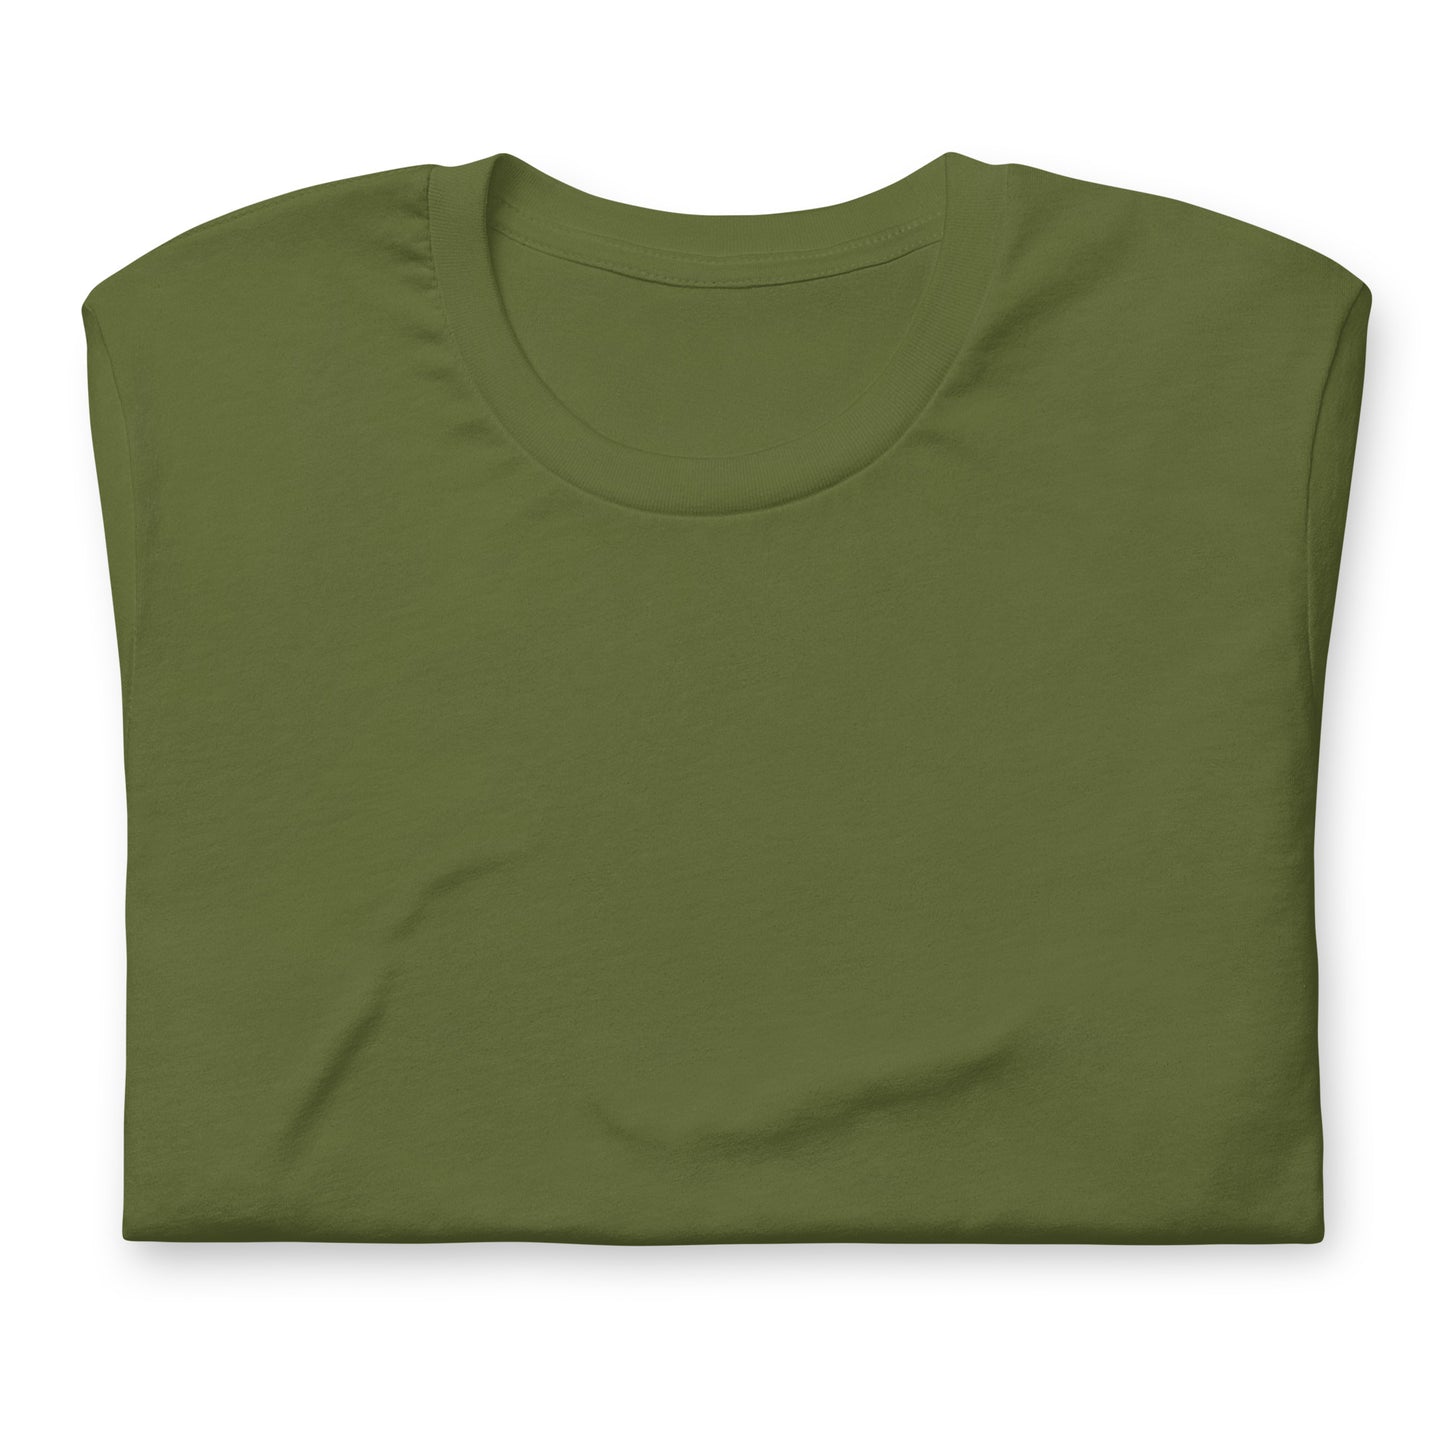 Camiseta Verde Oliva de Algodón - Elegancia y calidad en nuestra insignia. Descubre la perfección del algodón premium importado. Guatemala